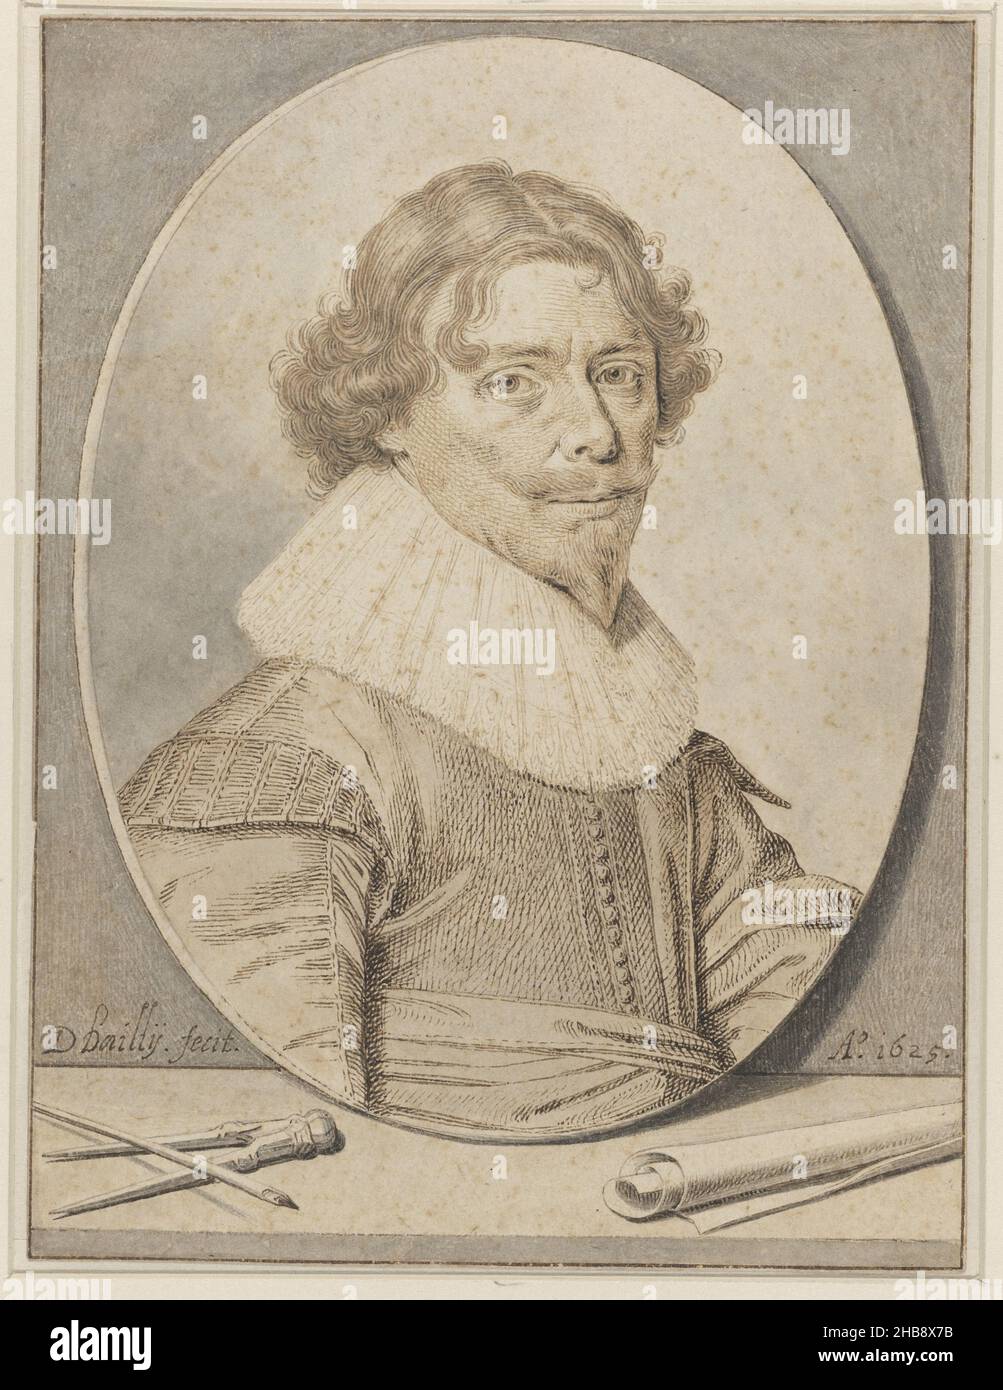 Autoritratto di David Bailly, disegnatore: David Bailly, 1625, carta, inchiostro, penna, spazzola, altezza 182 mm x larghezza 137 mm Foto Stock